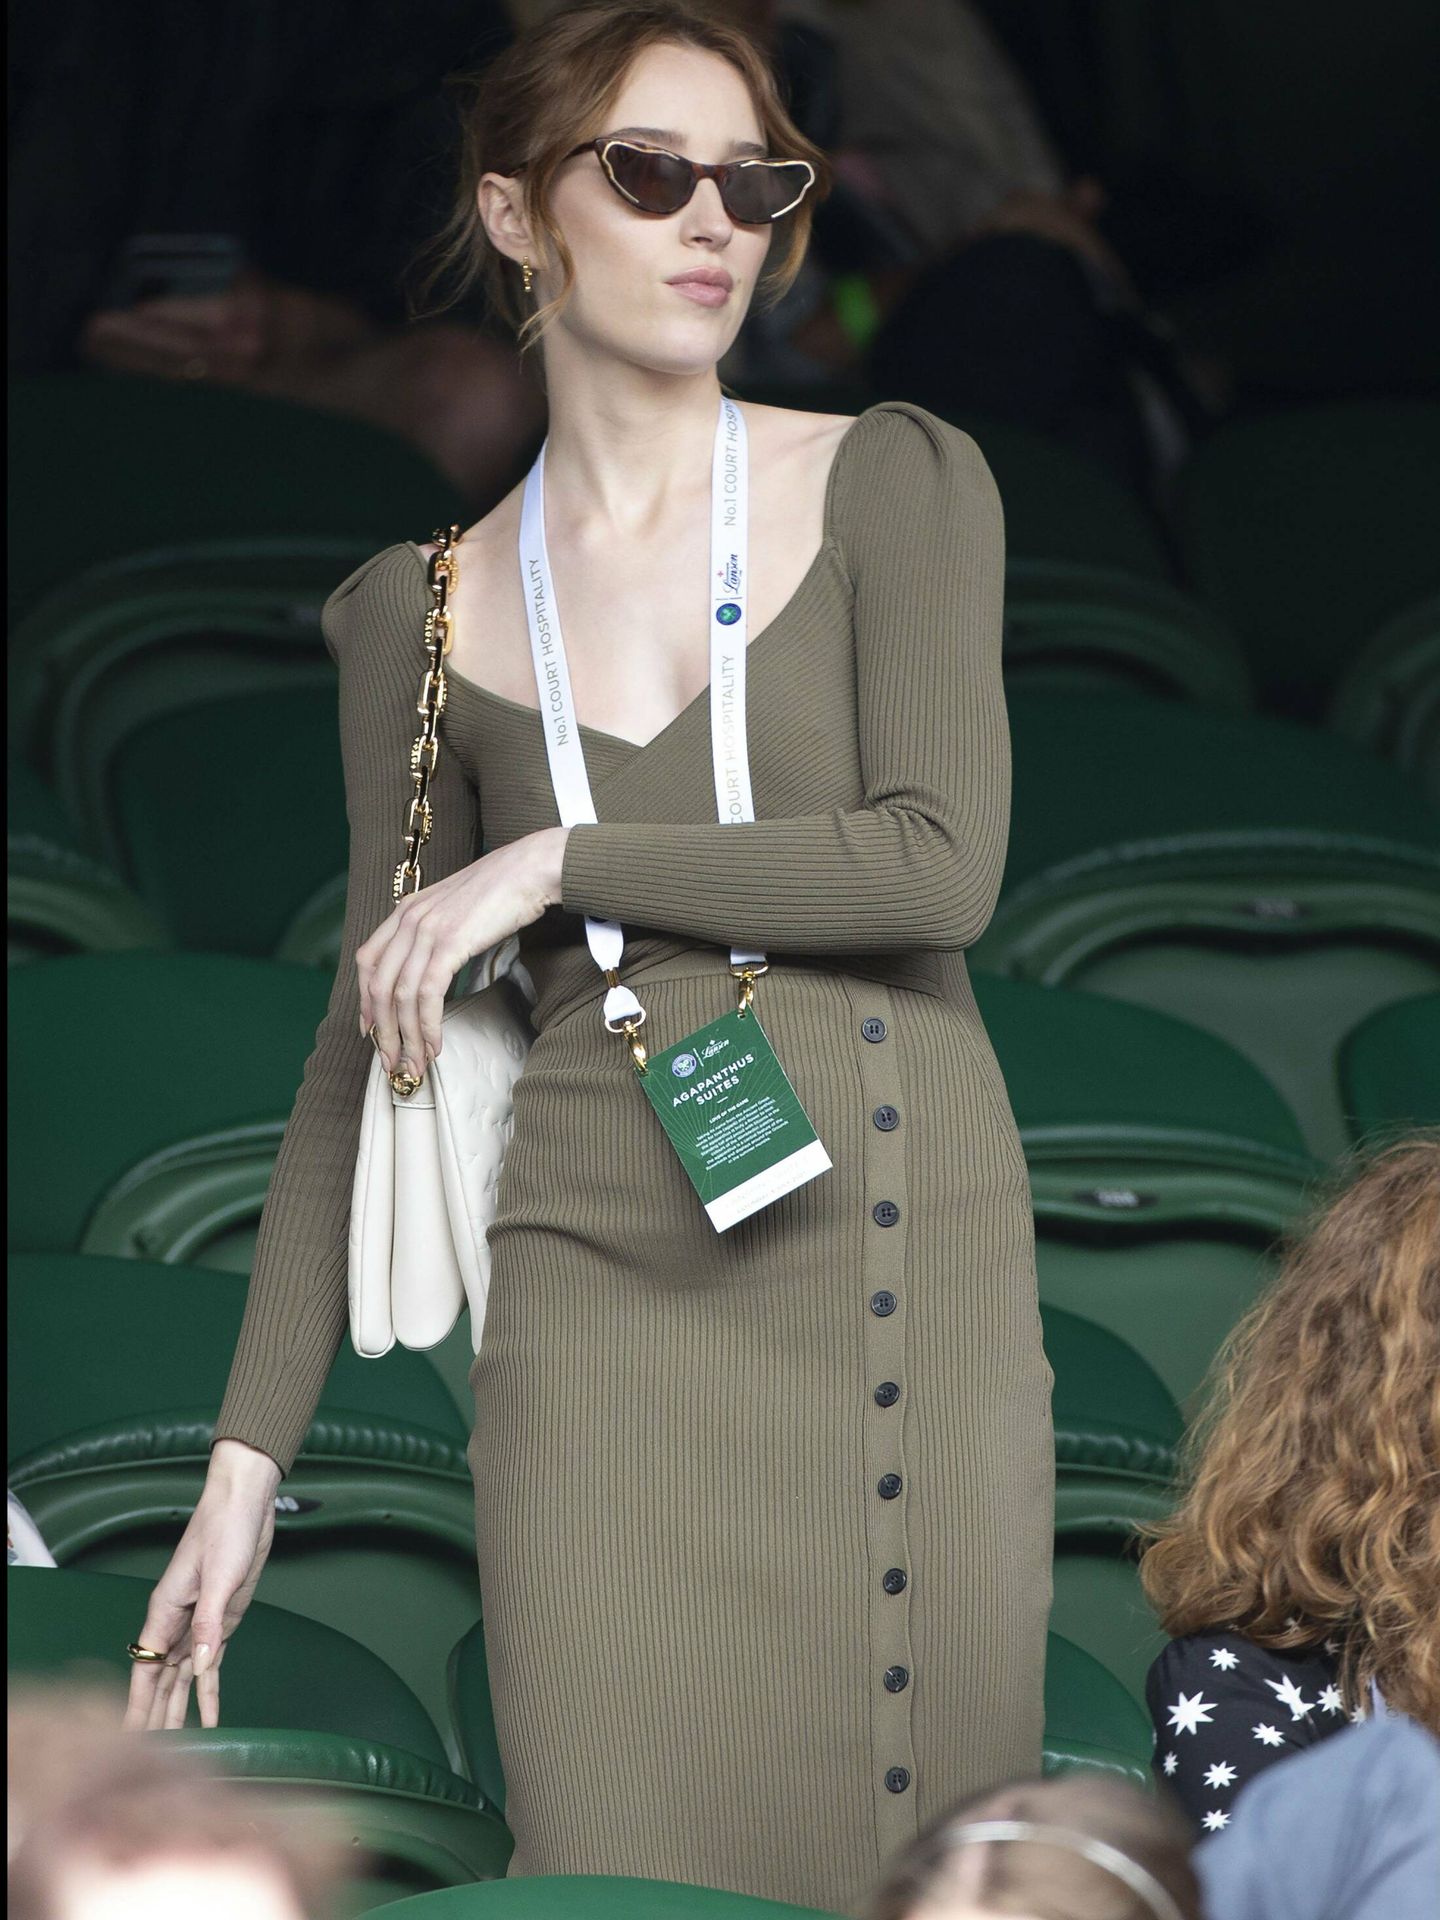 La actriz Phoebe Dynevor, en Wimbledon 2021. (Cordon Press)